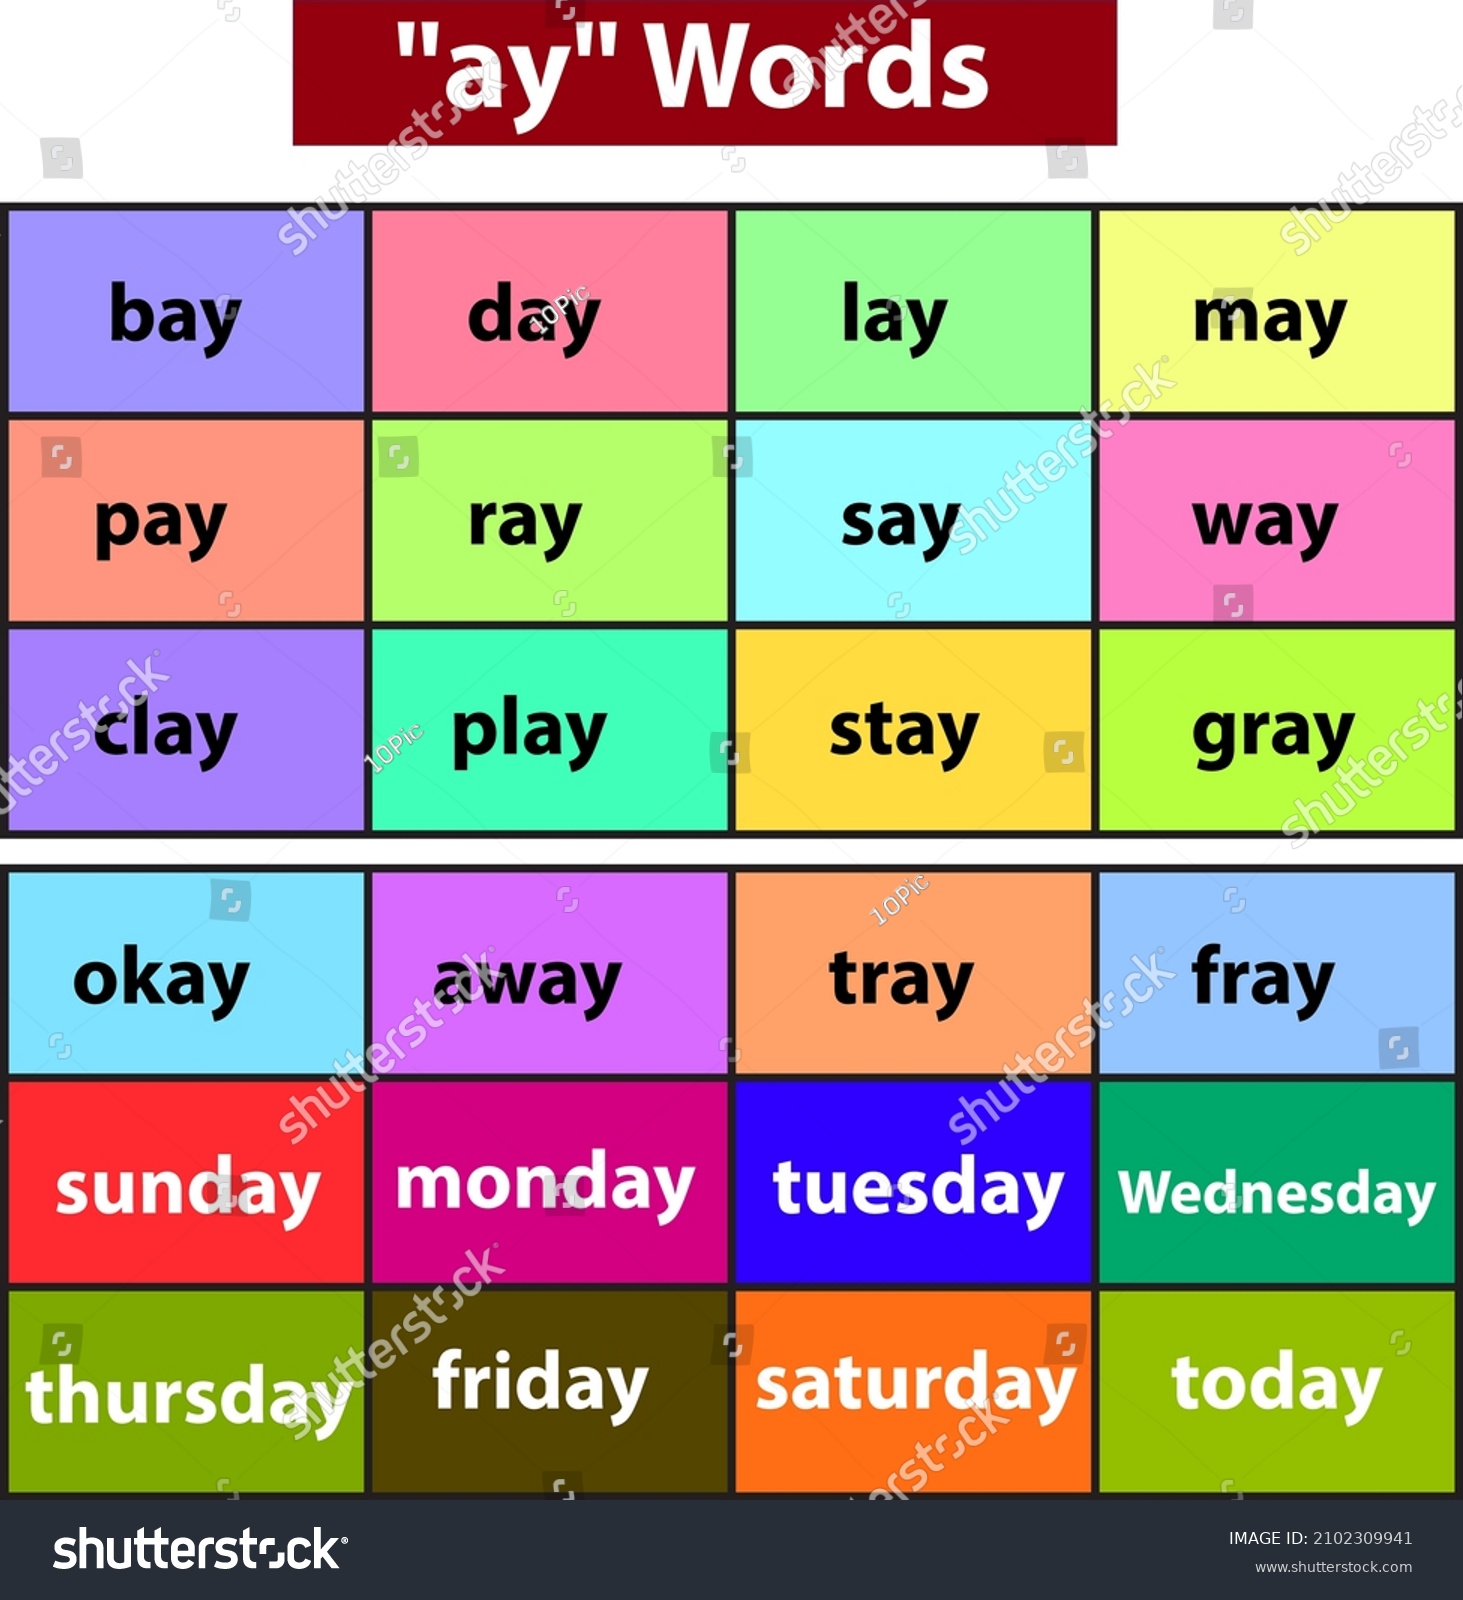 some-examples-ay-words-kindergarten-phonics-2102309941